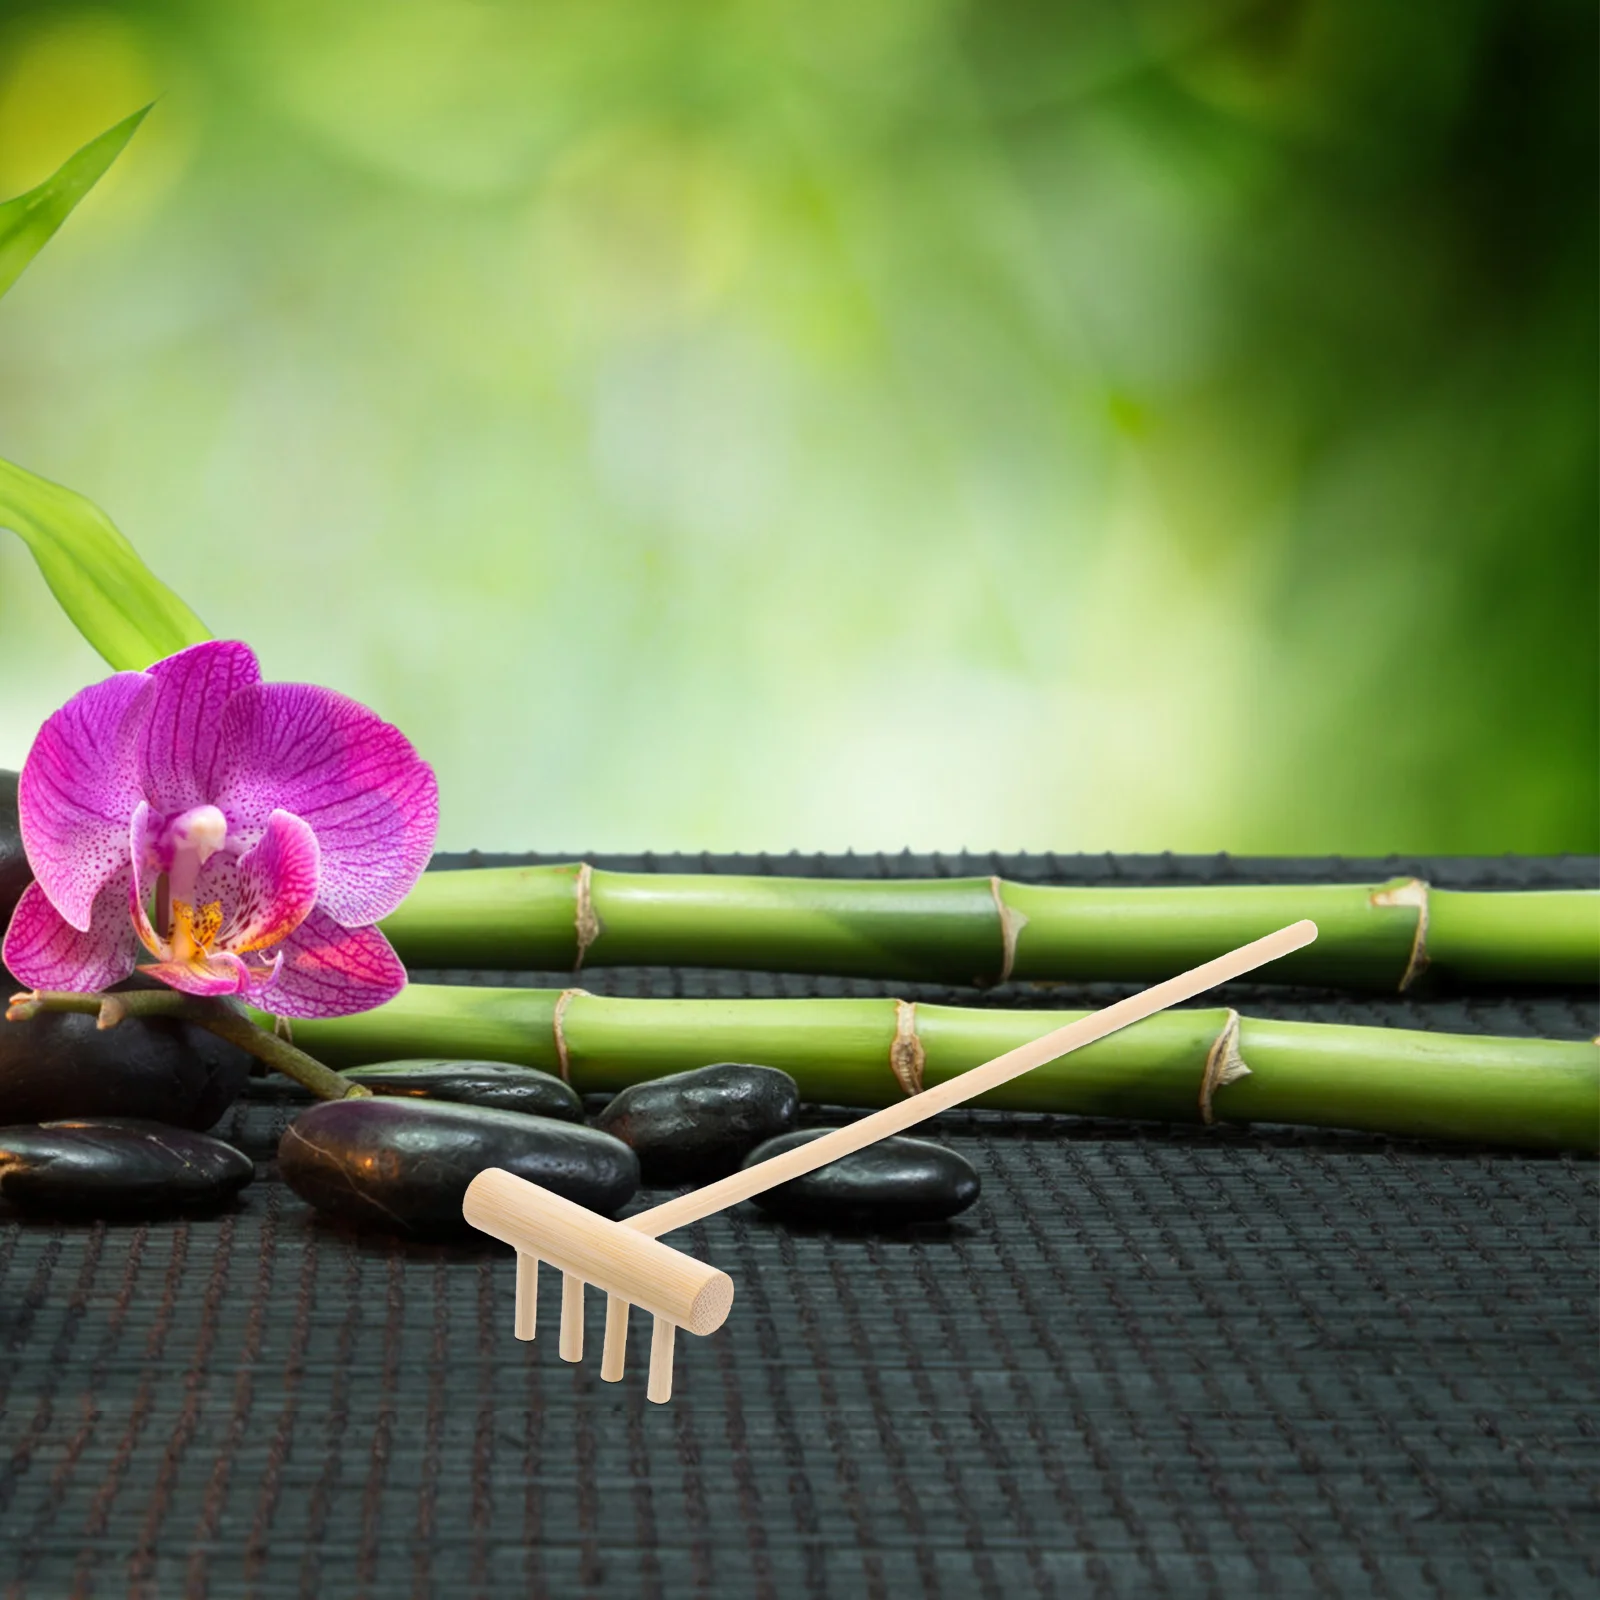 3 Pcs Mini Rakes Tool For Model Kit Garden Sand Bamboo Tabletop Meditation Feng Shui Decor For Home Office